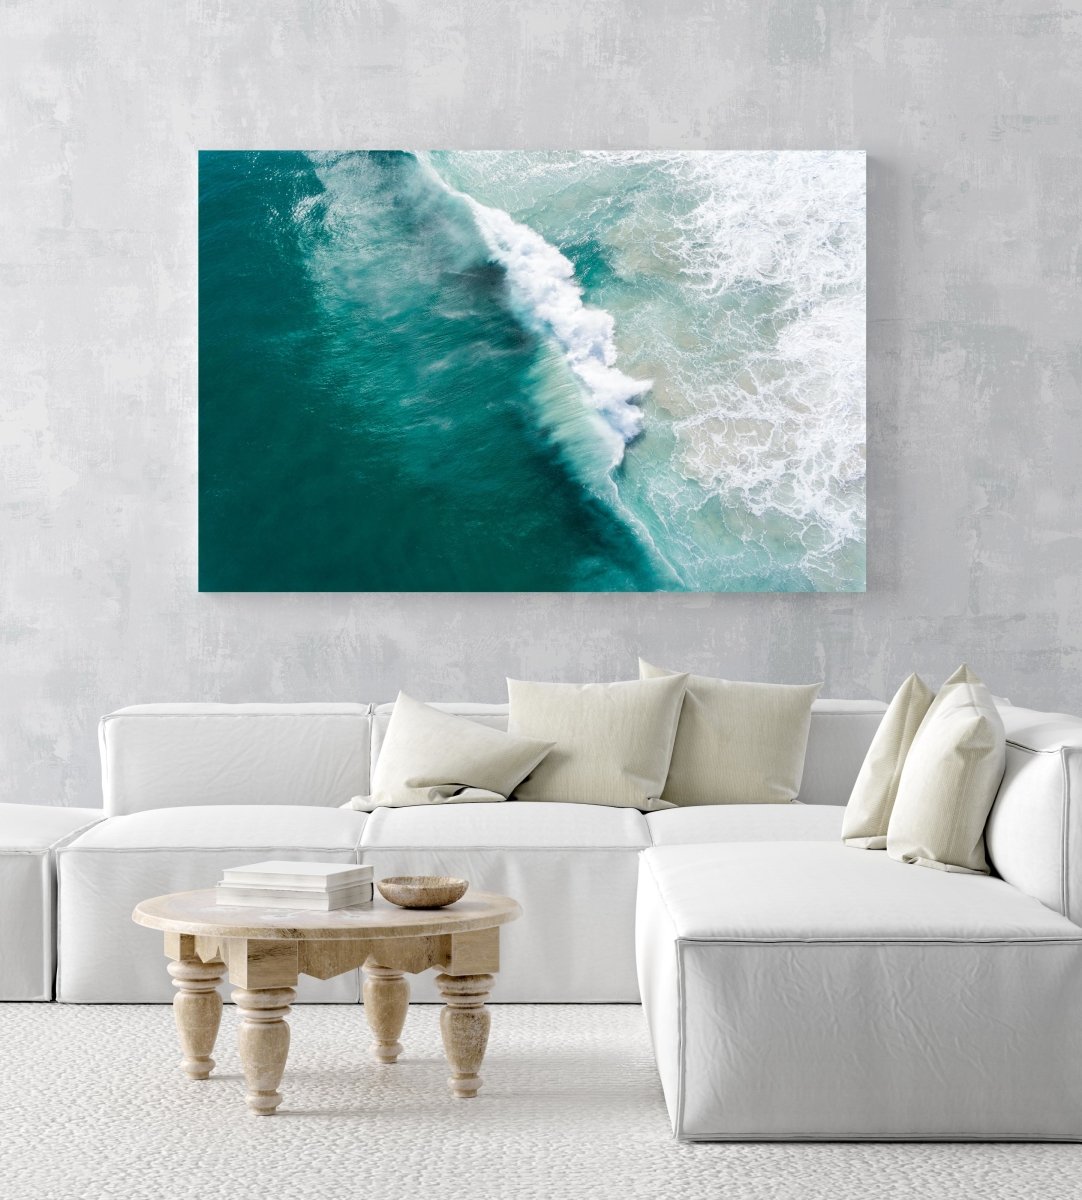 Big wave breaking in dark turquoise Noordhoek Beach from the air in an acrylic/perspex frame